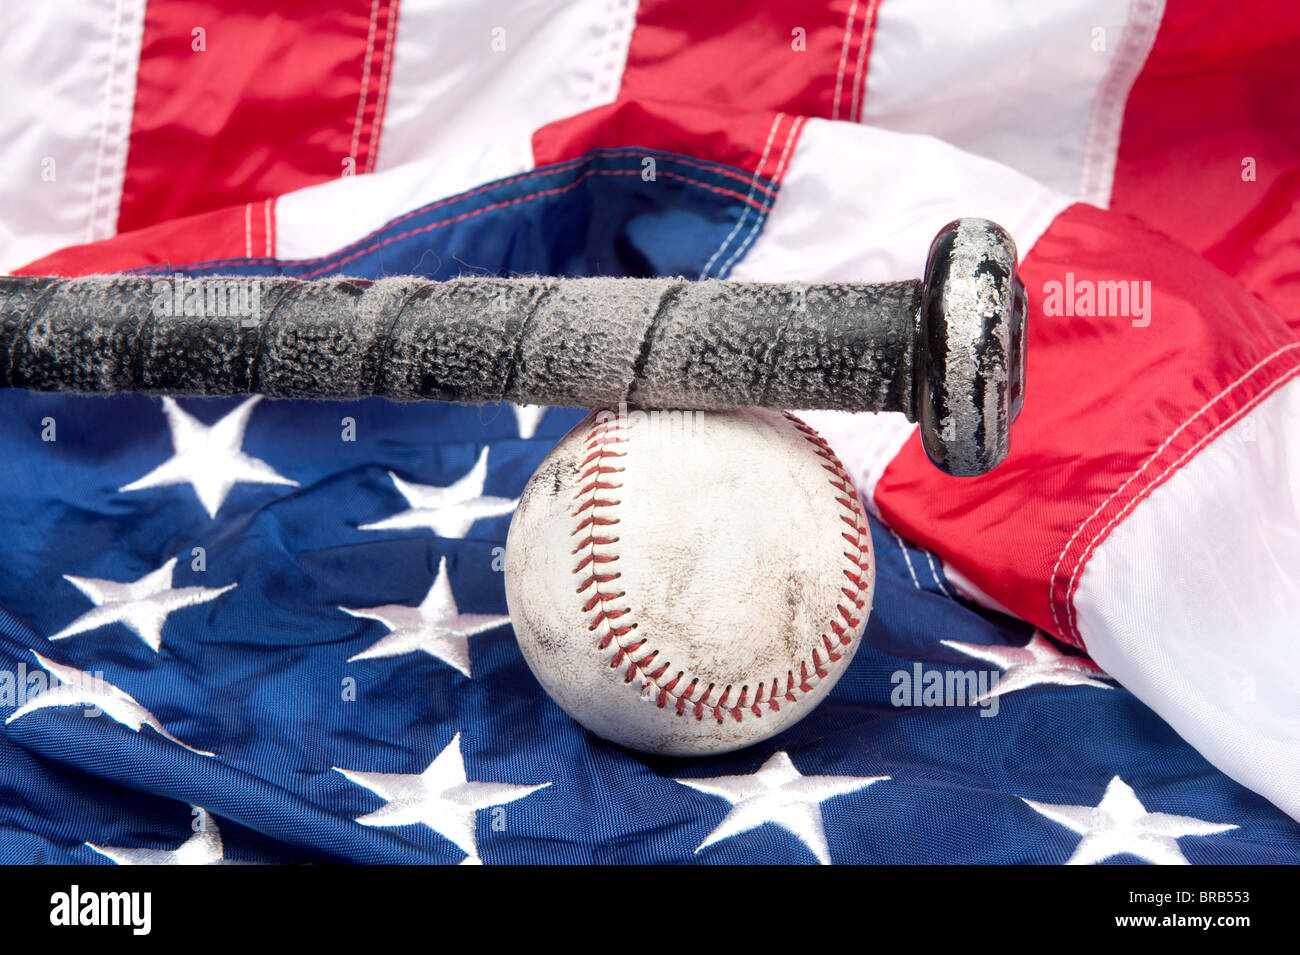 Los equipos de béisbol incluyendo un bate y una pelota de béisbol en una bandera Americana. Foto de stock